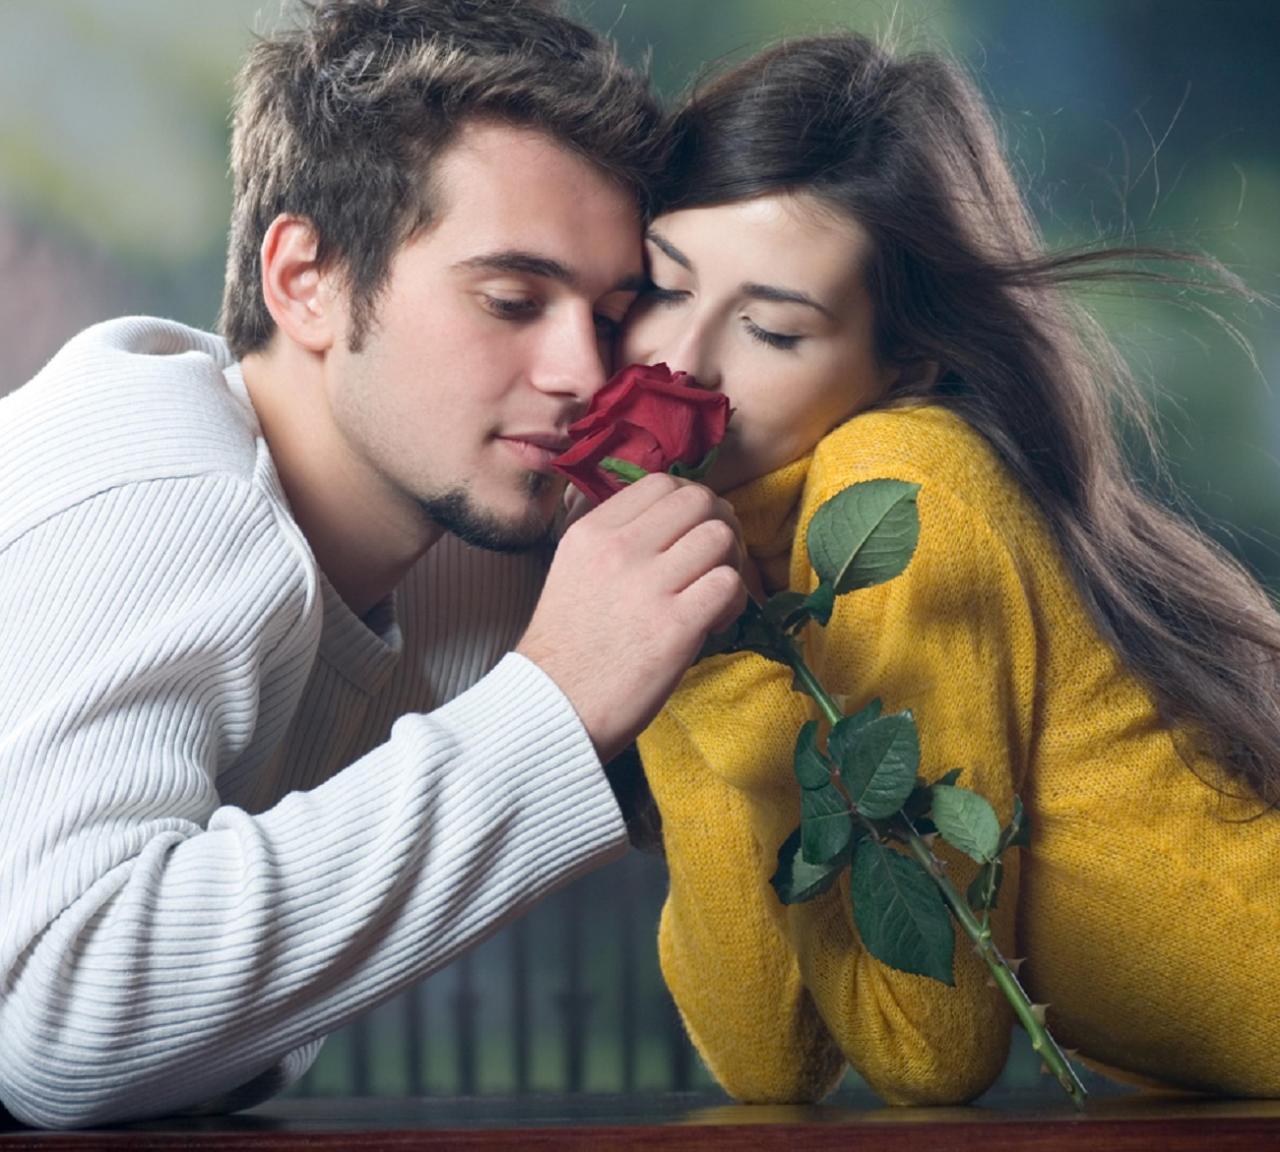 الروعه الرومانسيه جامده جدا رومانسية صور في قمه والحب